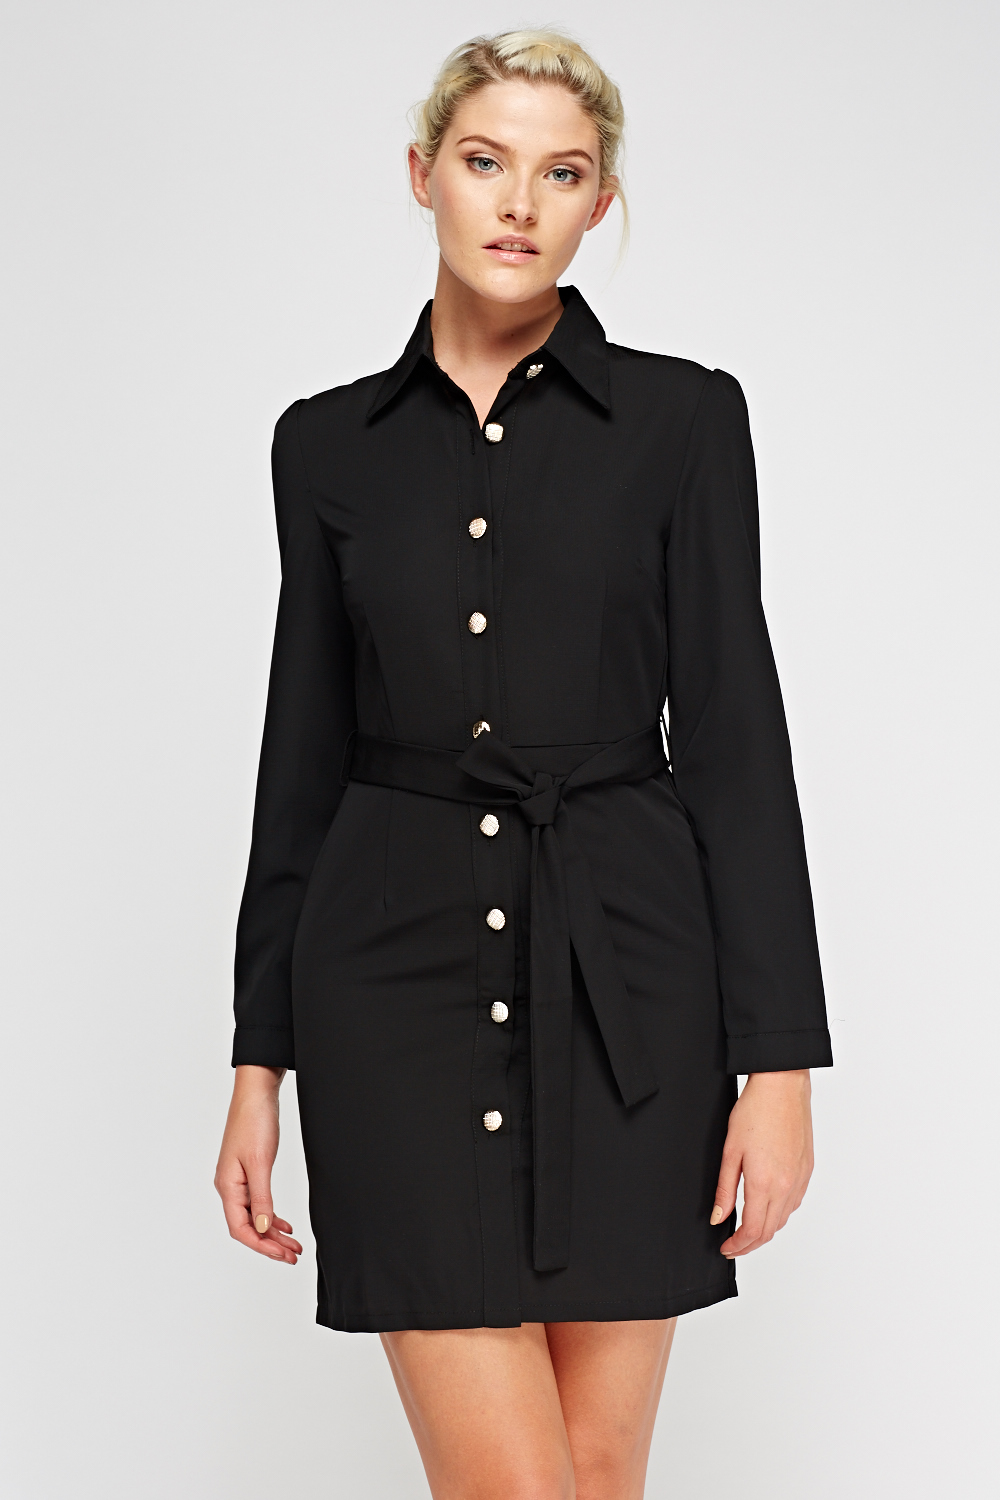 Button Up Shirt Dress - Black - Just £5